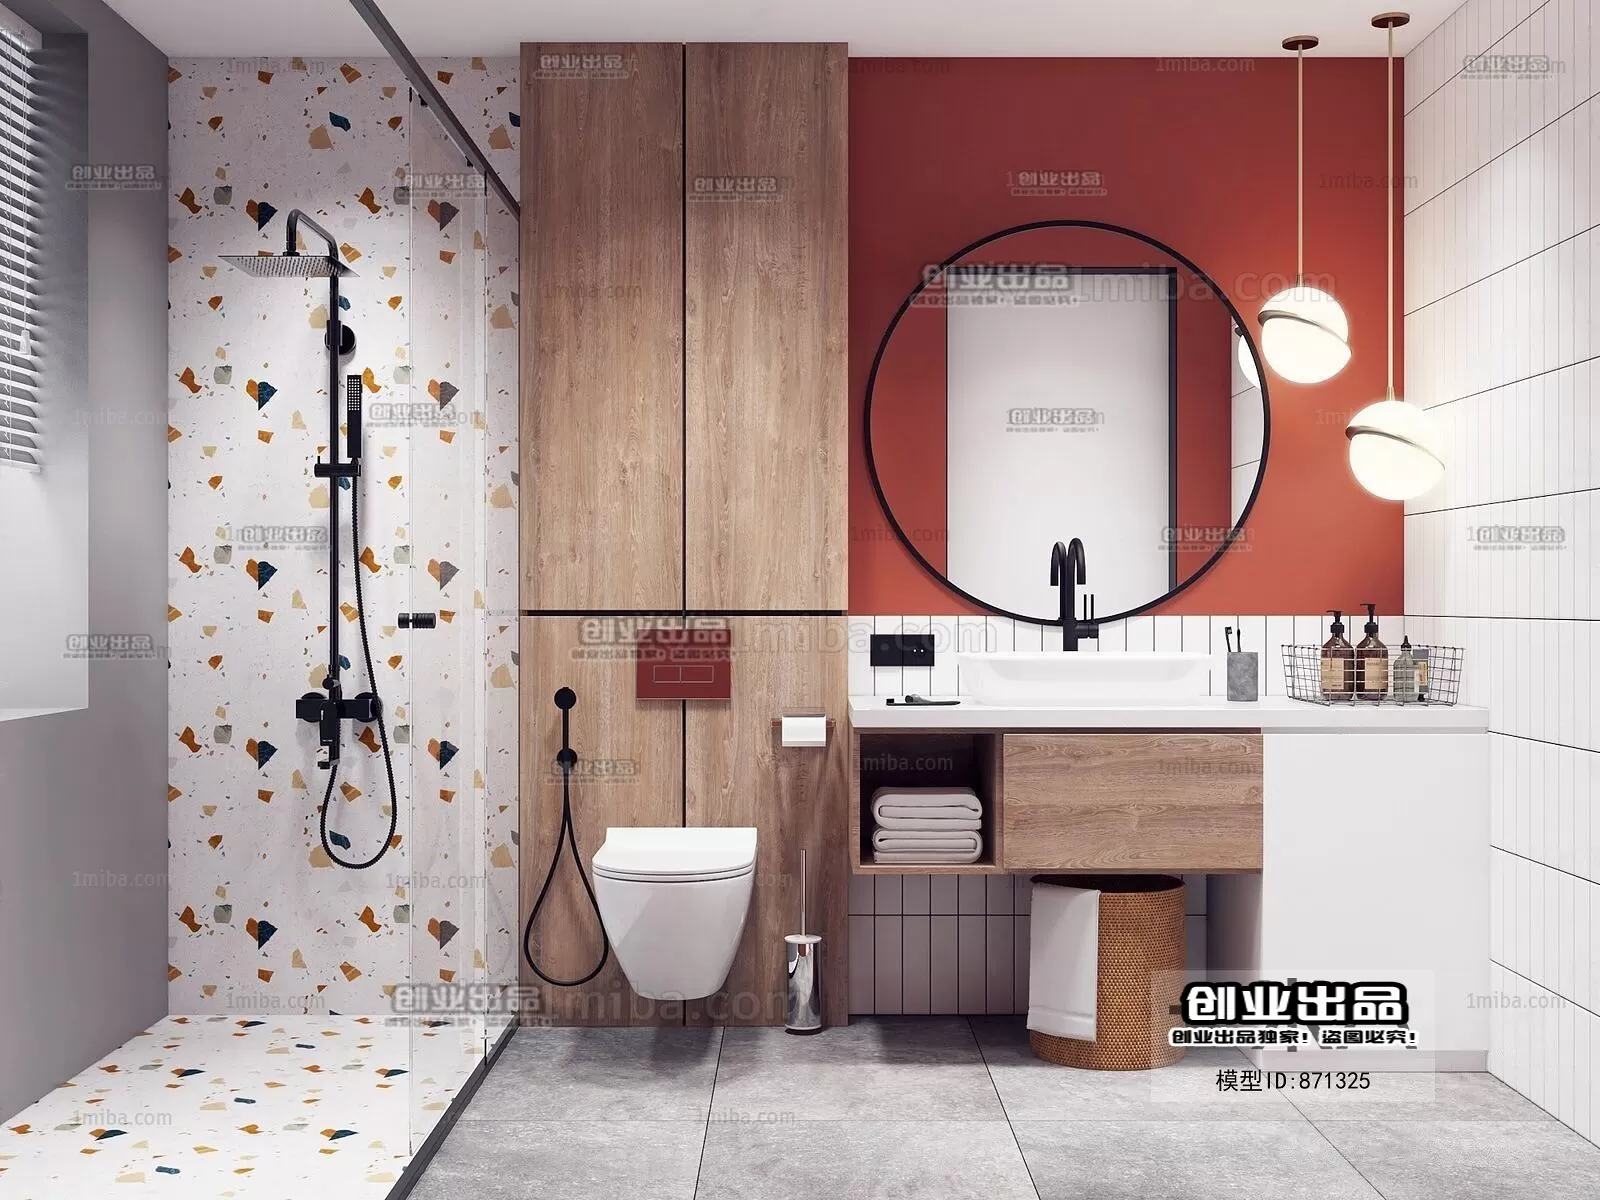 Bathroom – Scandinavian architecture – 018